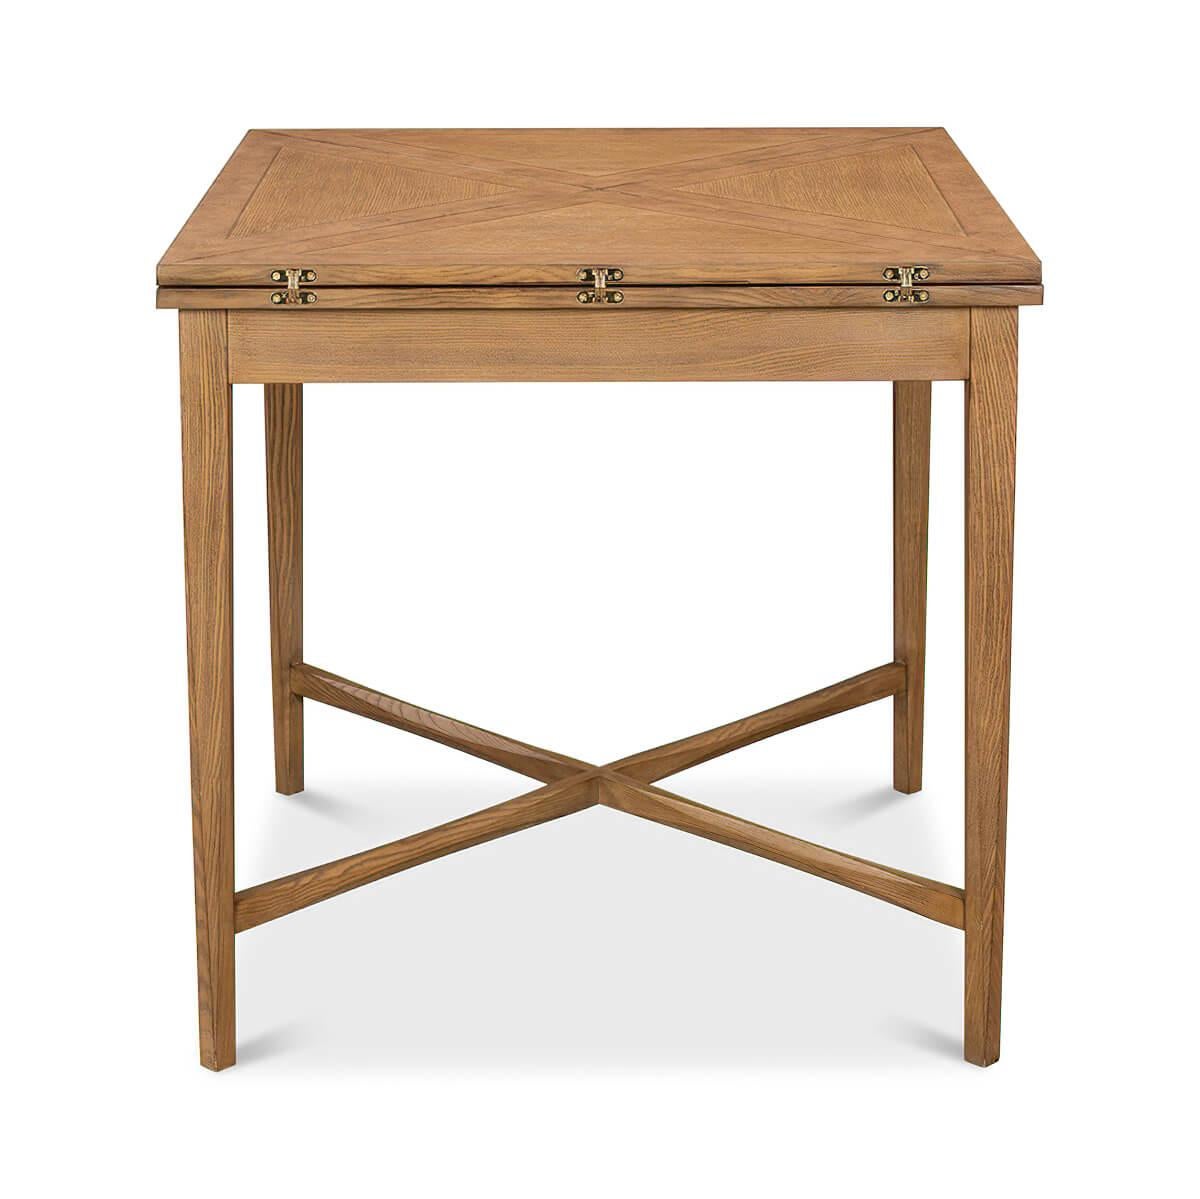 Ein moderner Neo Classic Form rustikalen Eiche Umschlag Spieltisch. Der aus massiver und furnierter Eiche, Wurzelholz und Nussbaum gefertigte Klapptisch verfügt über eine schwenkbare Platte, die eine große quadratische Tischfläche freigibt.